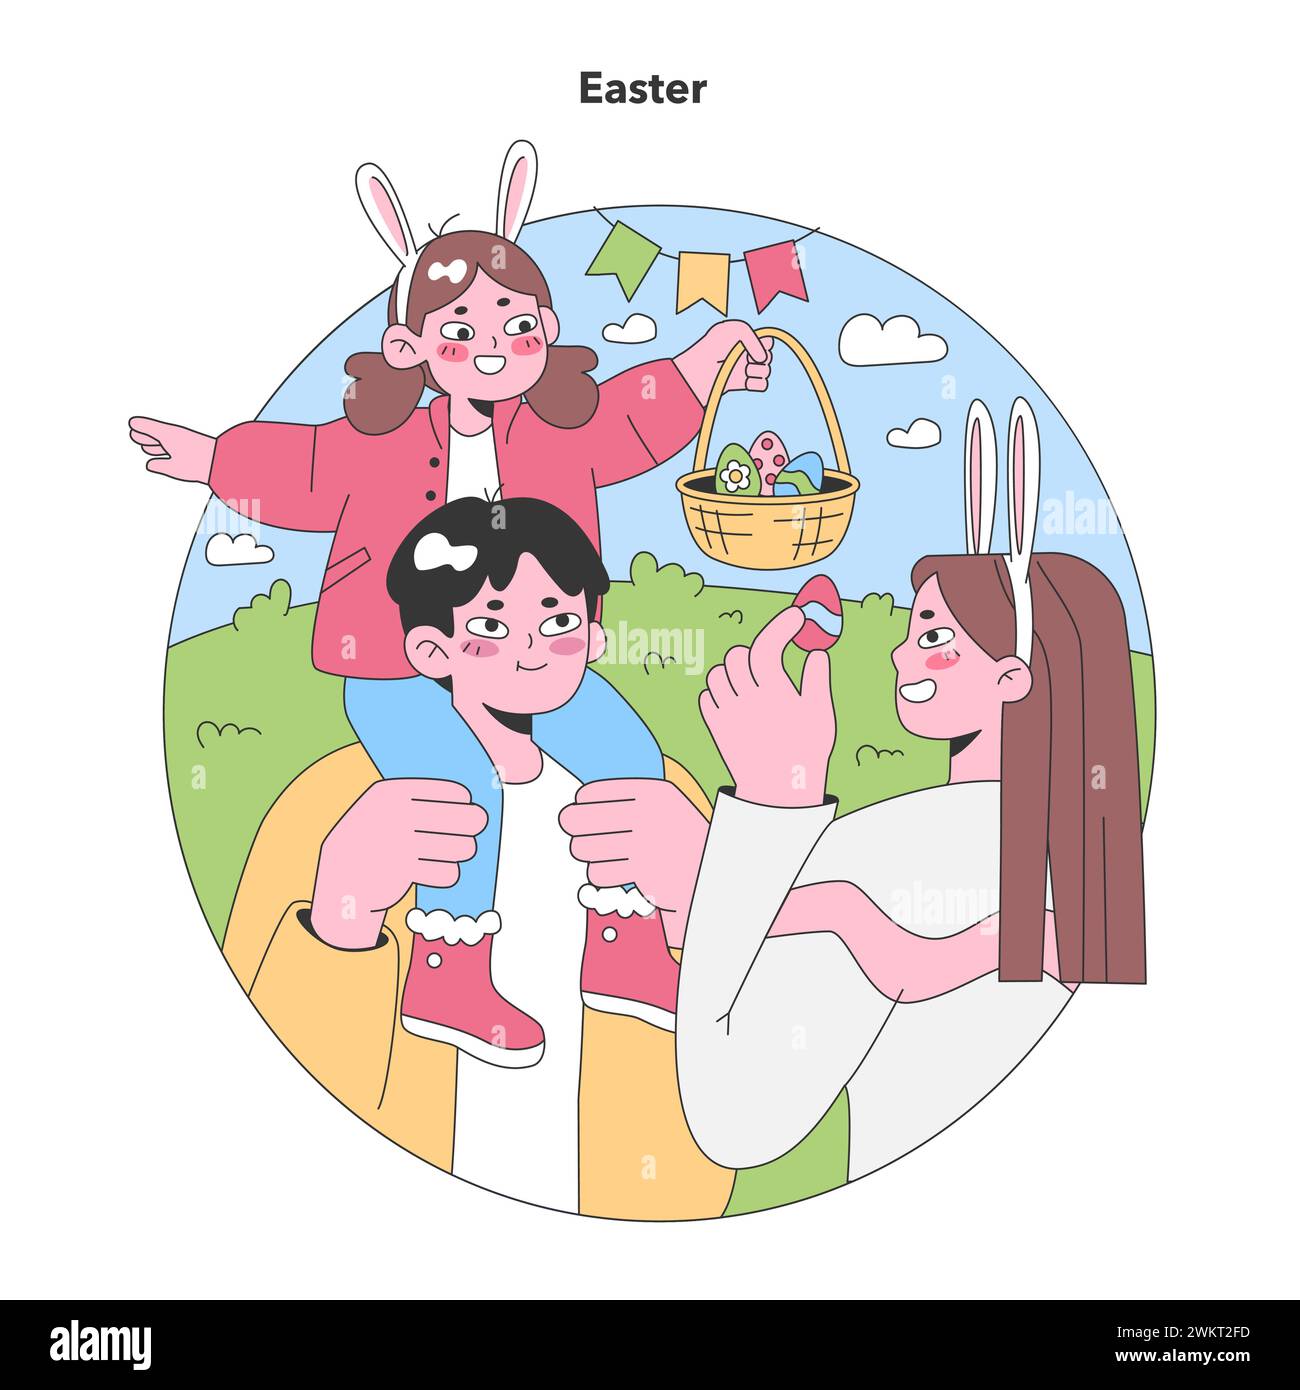 Osterfeier. Die Familie genießt eine sonnige Eierjagd, mit Kindern, die Hasenohren tragen und Schokoladengerichte teilen. Illustration des flachen Vektors Stock Vektor